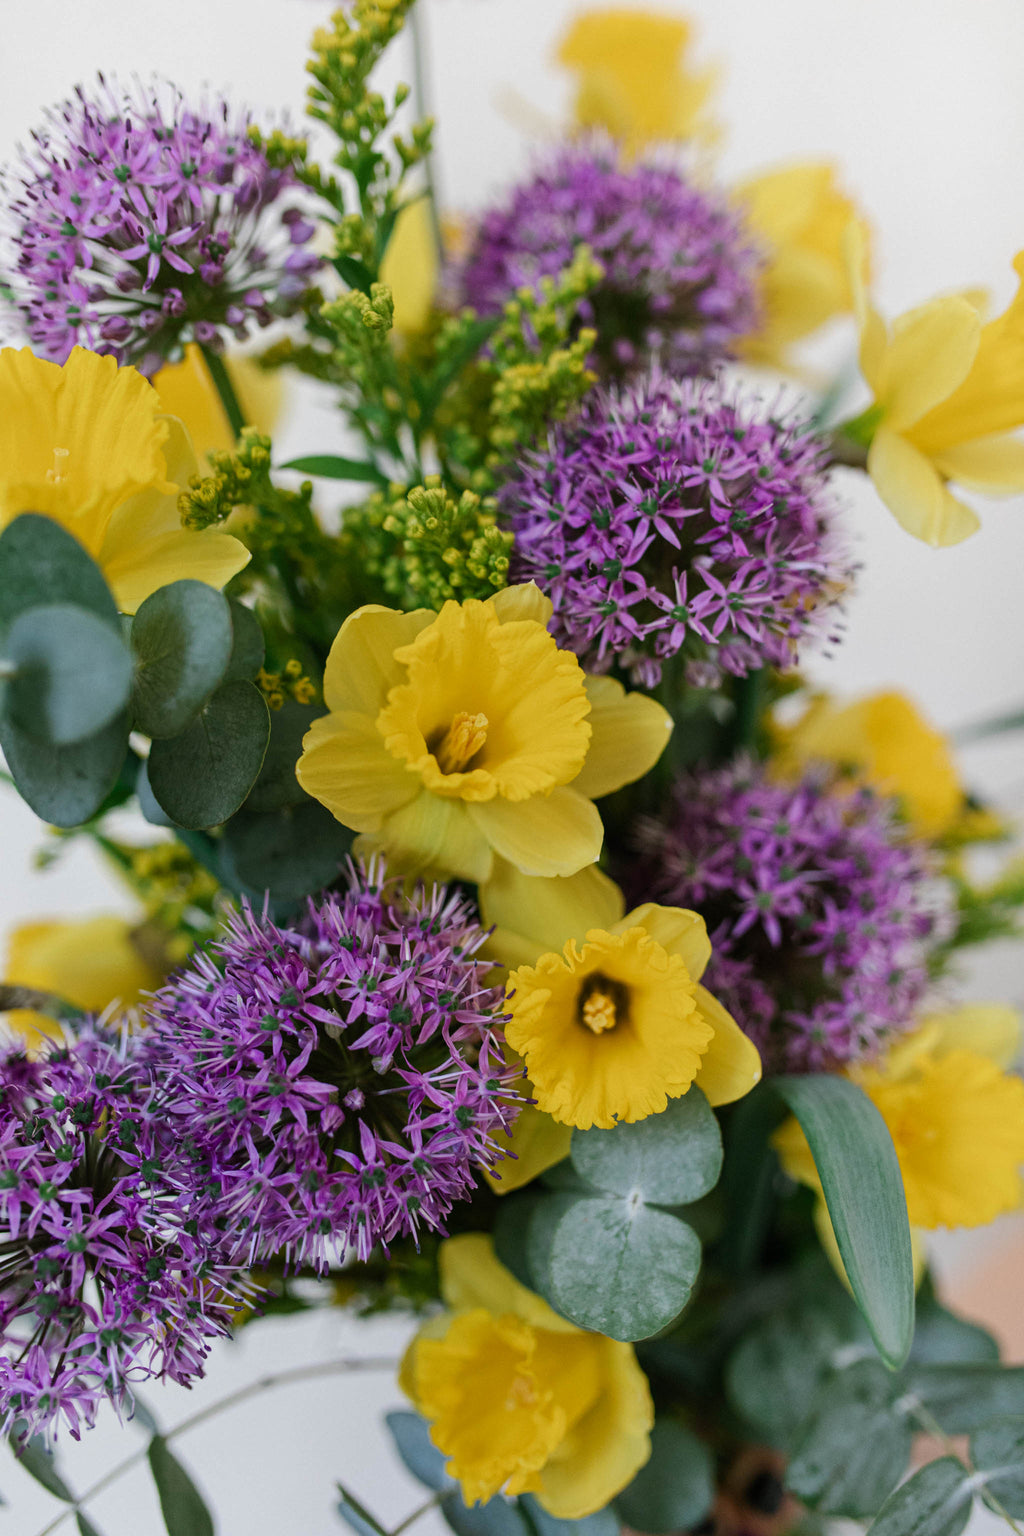 alblanc | Ramo de flores violetas - Alliums y narcisos